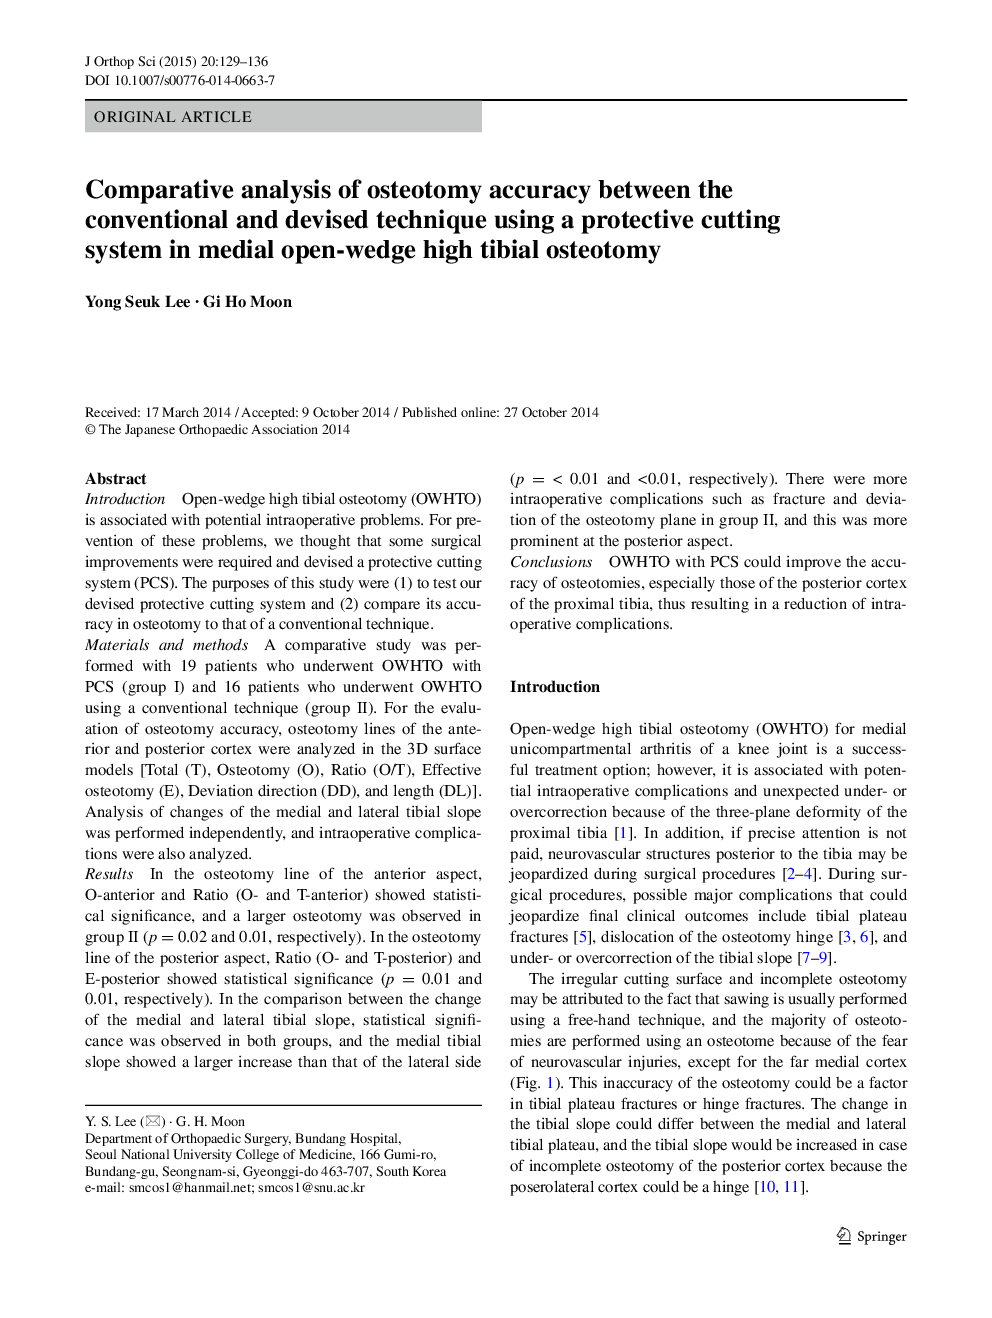 تجزیه و تحلیل تطبیقی ​​دقت استئوتومی بین تکنیک های متعارف و طراحی شده با استفاده از یک سیستم برش محافظ در استئواتومی تویستیال 